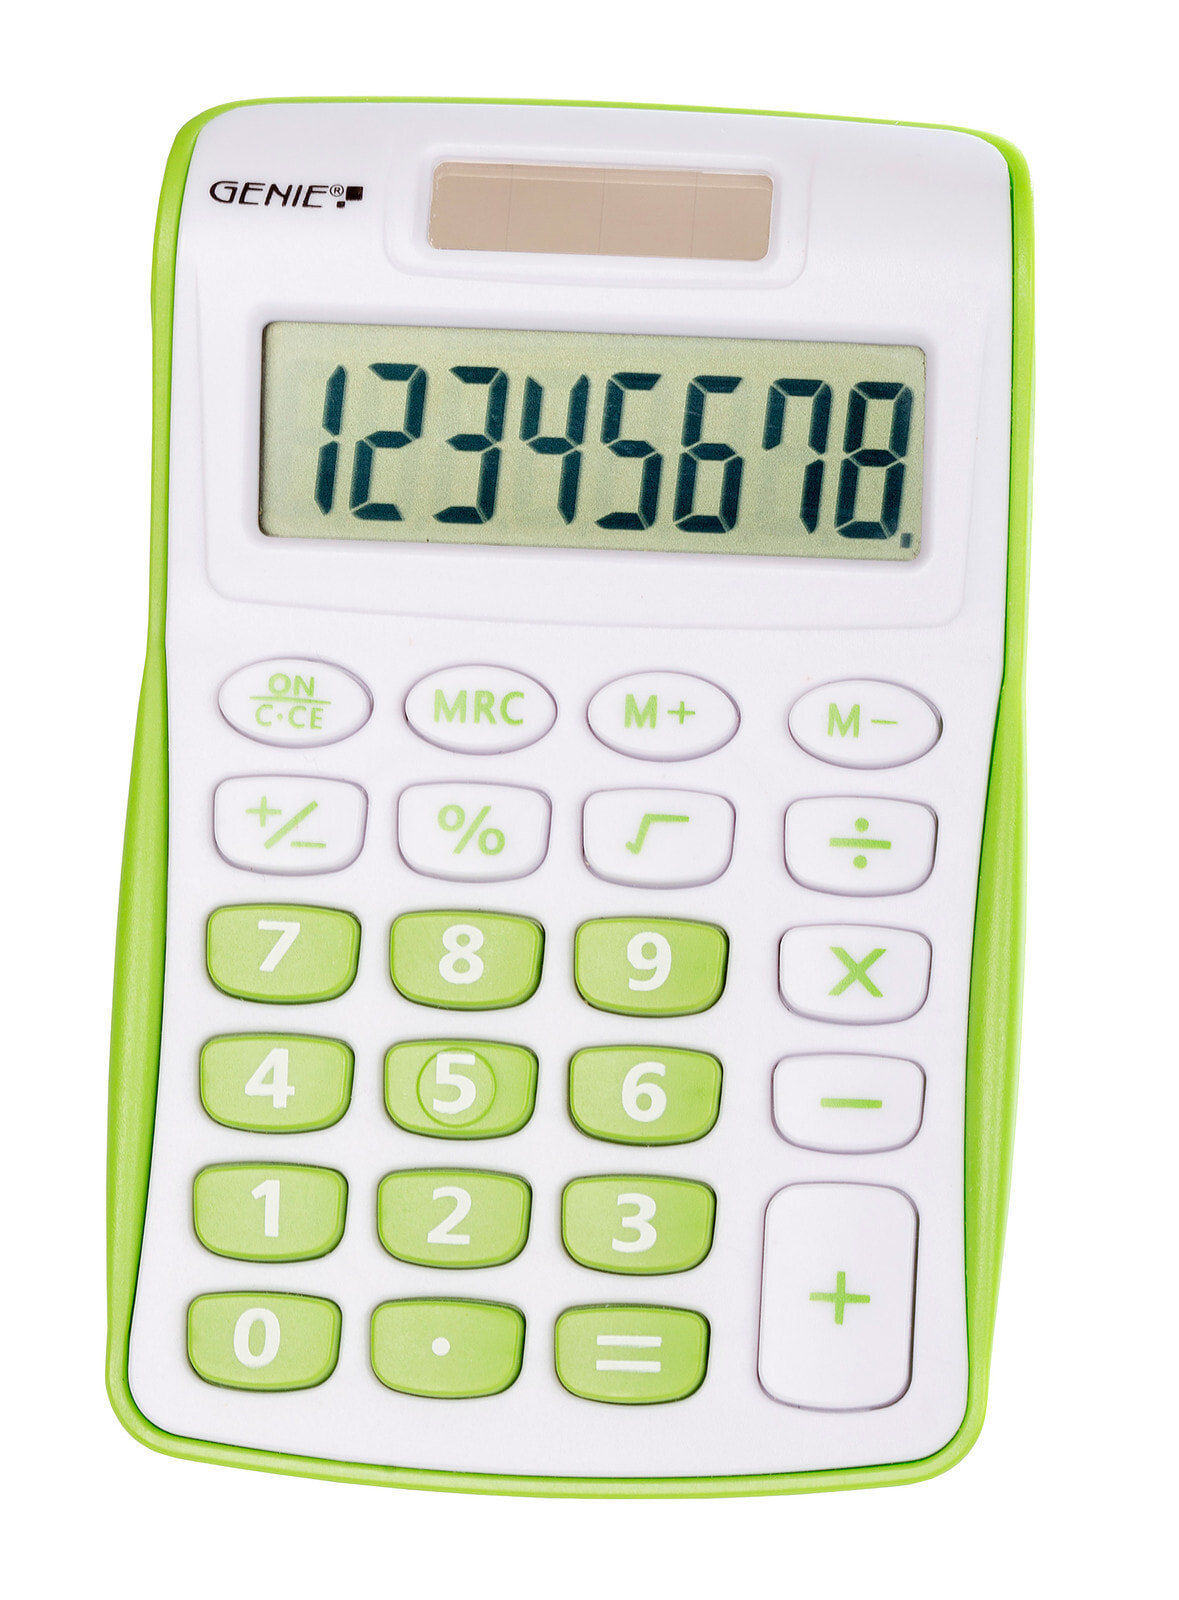 Go calculator. Калькулятор с зеленым экраном. Калькулятор оранжевый. Что такое re в калькуляторе. Старый калькулятор с зеленым экраном.